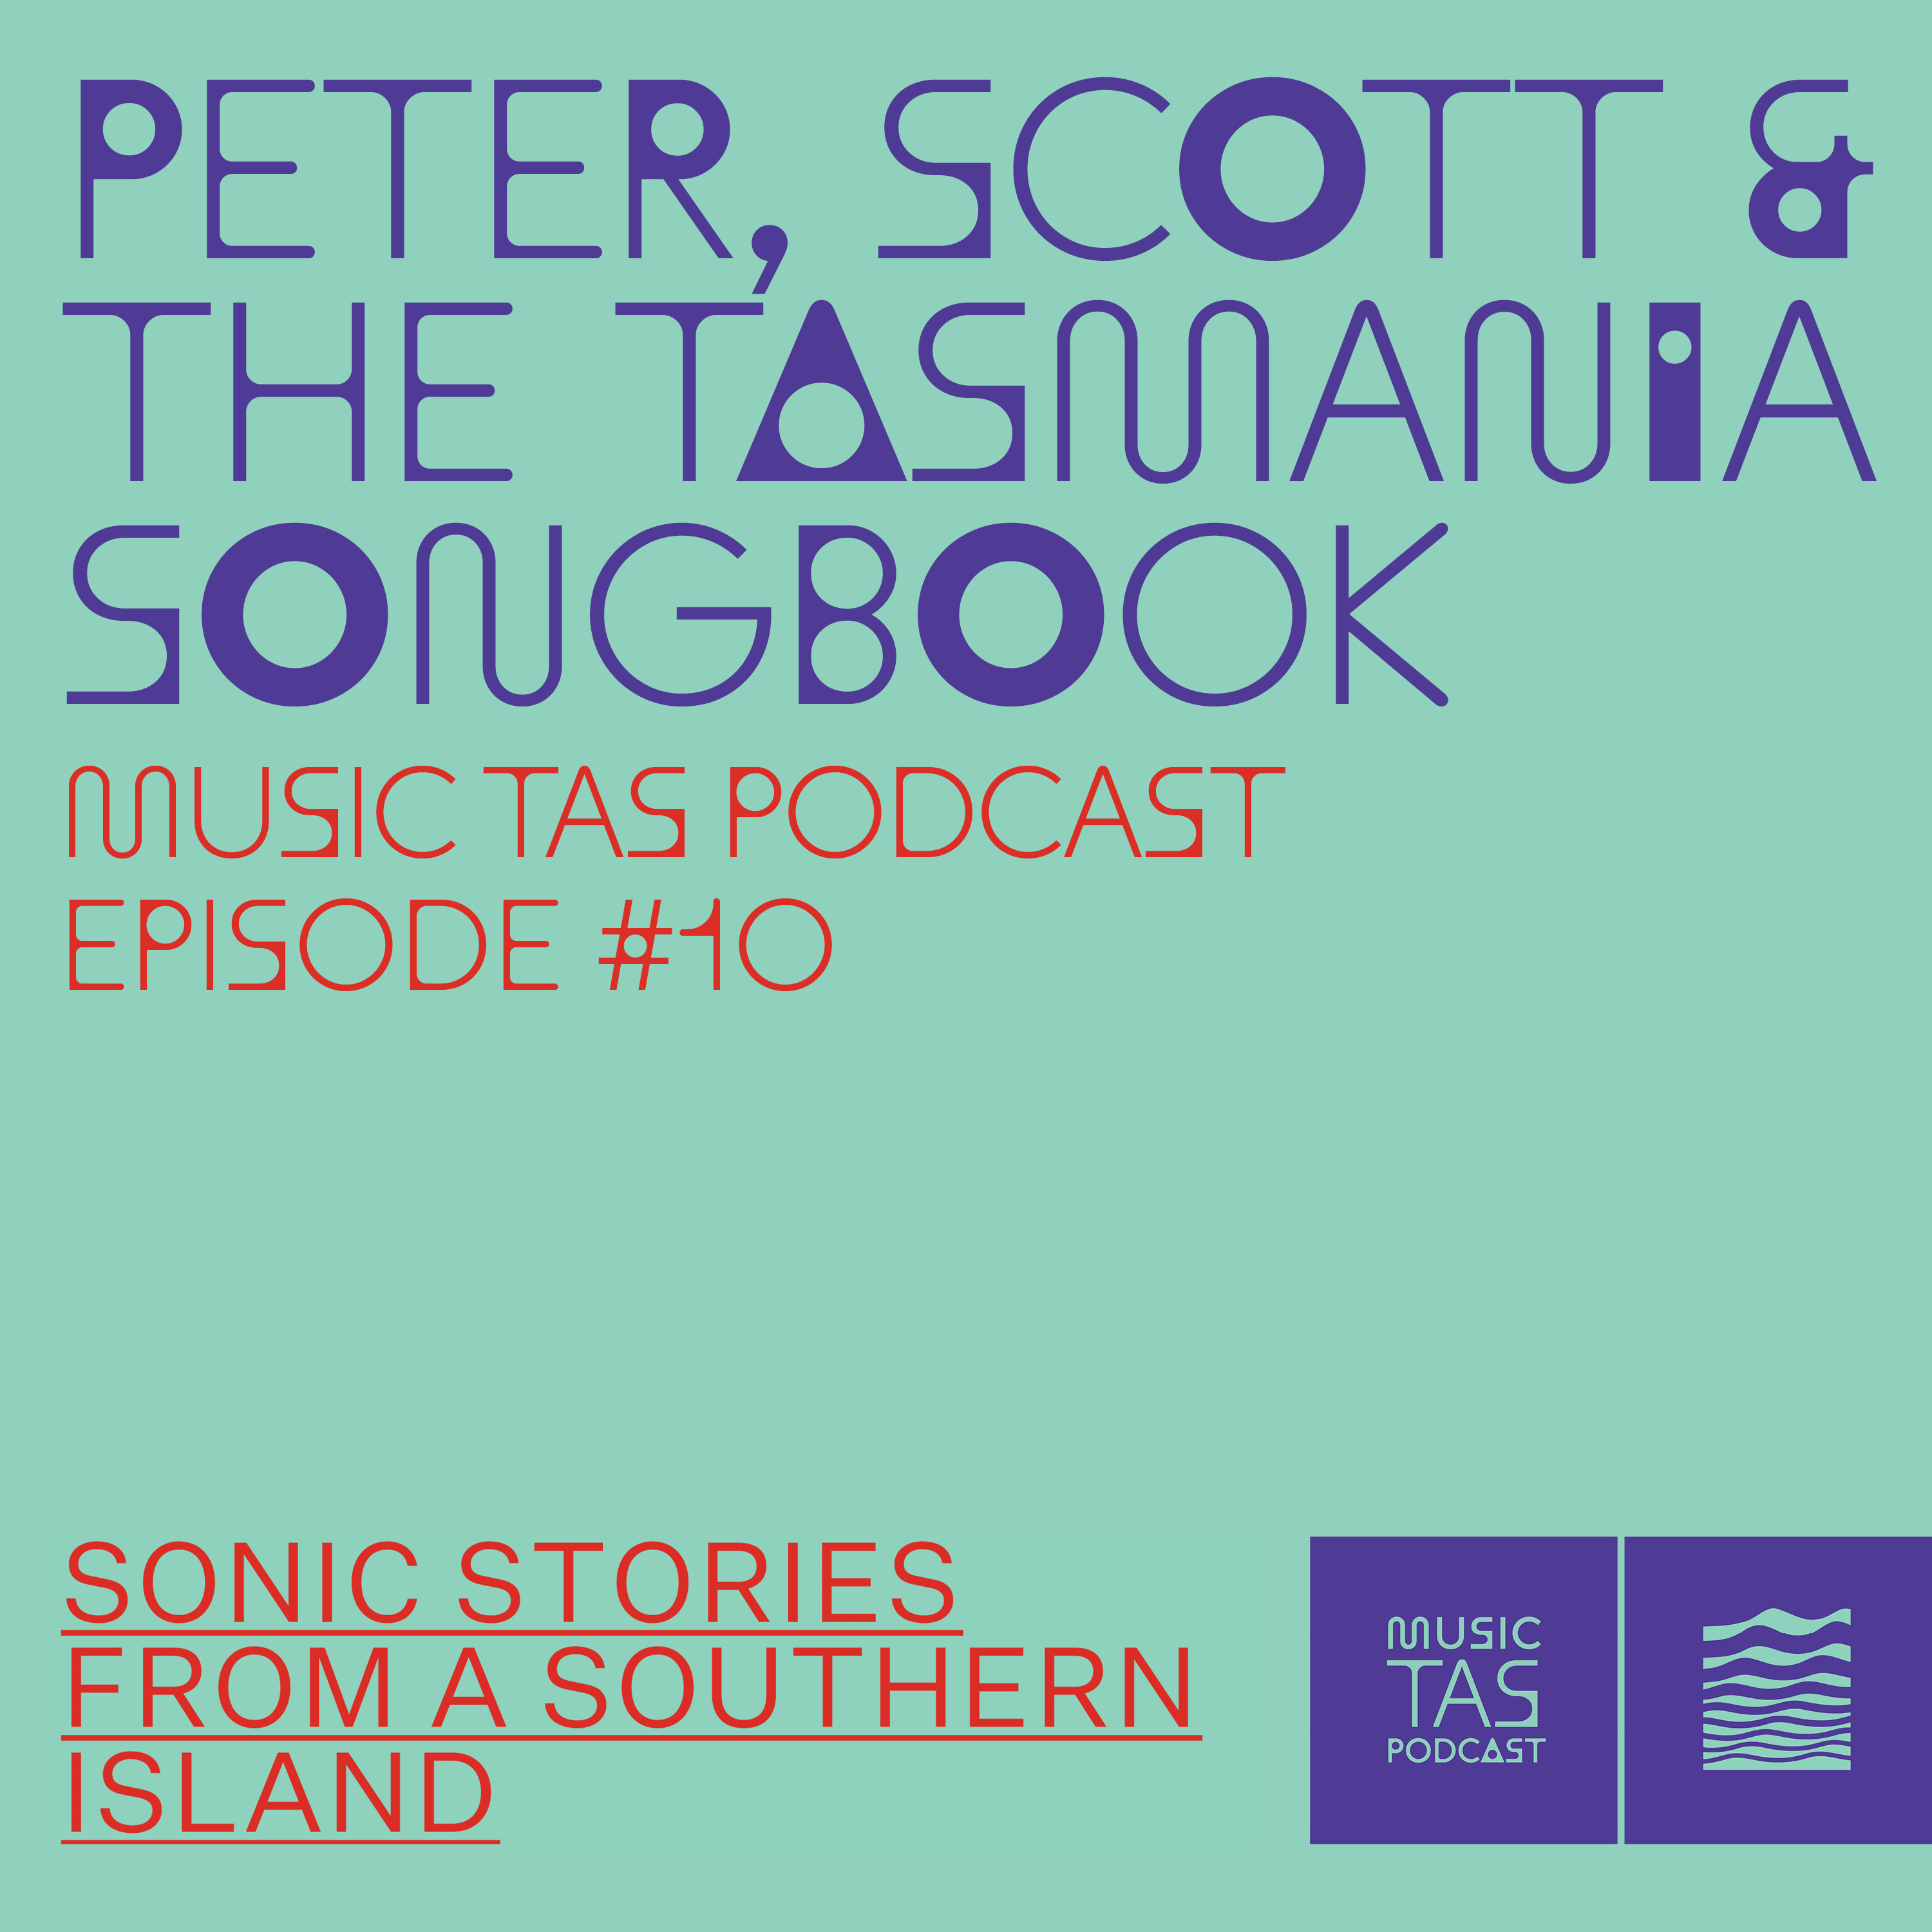 Peter, Scott & The Tasmania Songbook, Music Tas Podcast Episode #10